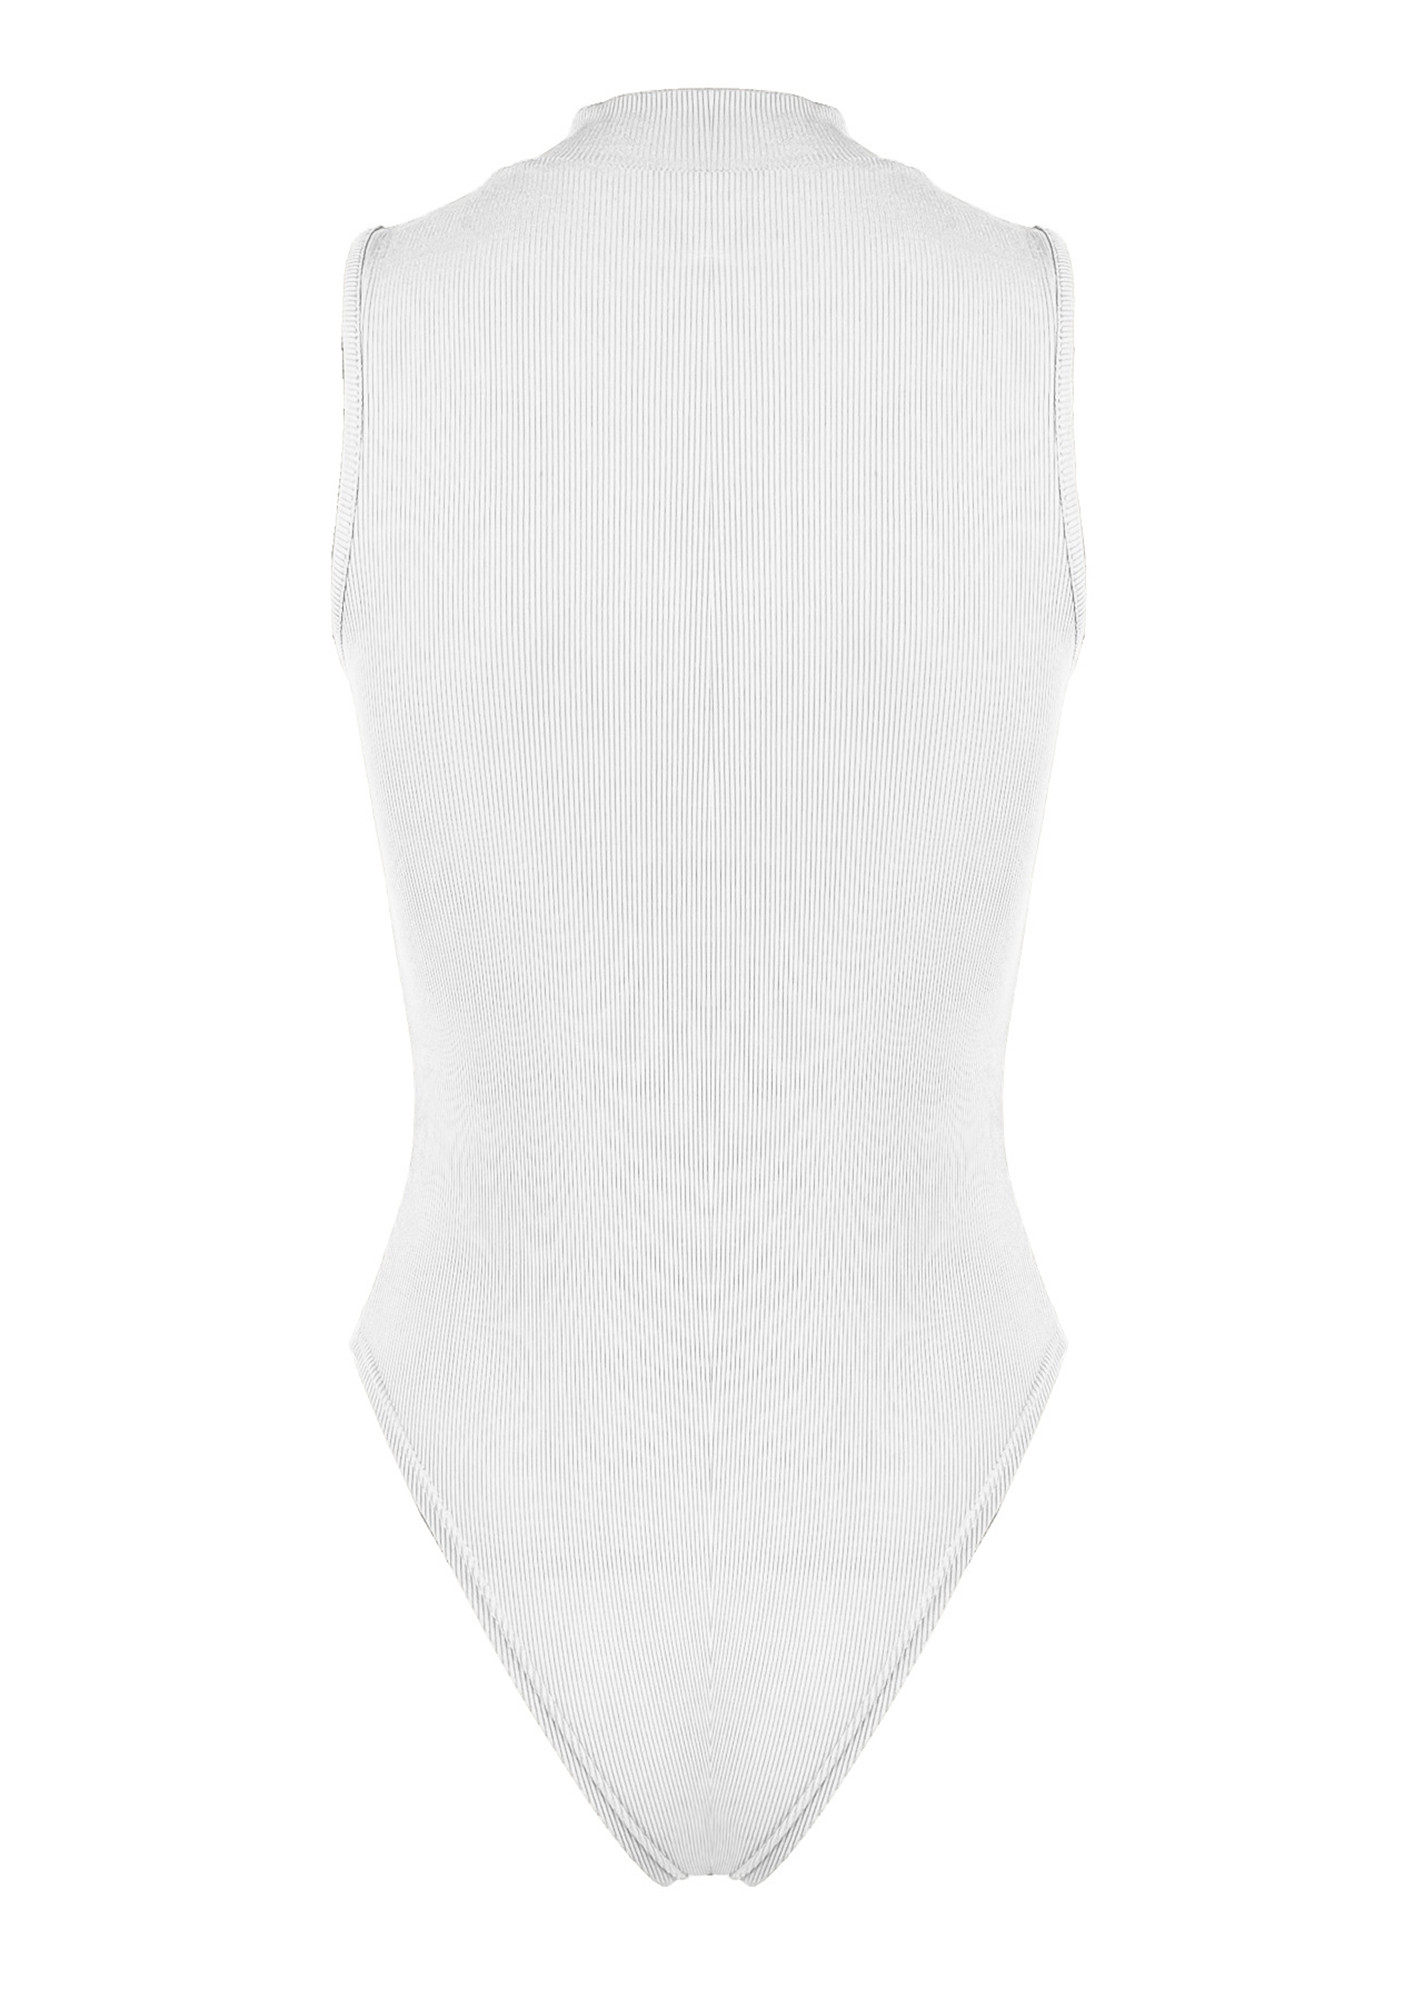 White Bodysuit - Puff Sleeve Bodysuit - Surplice Neck Bodysuit - Lulus